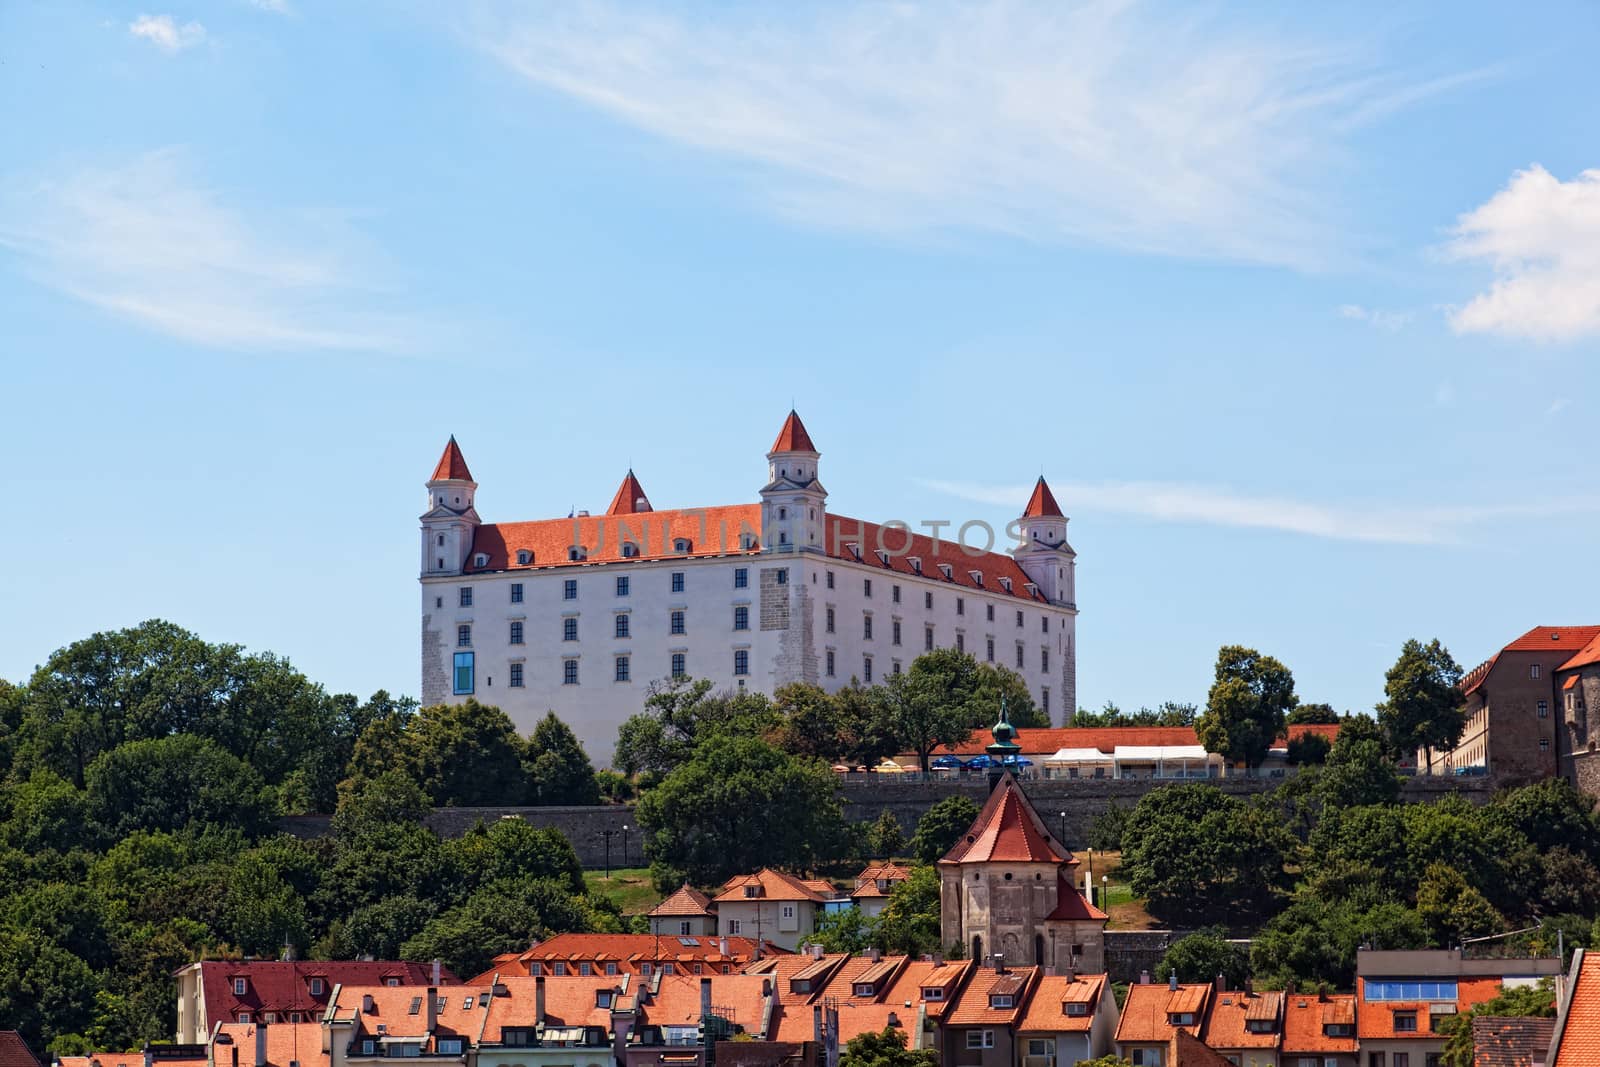 Medieval castle on the hill against the sky, Bratislava, Slovakia